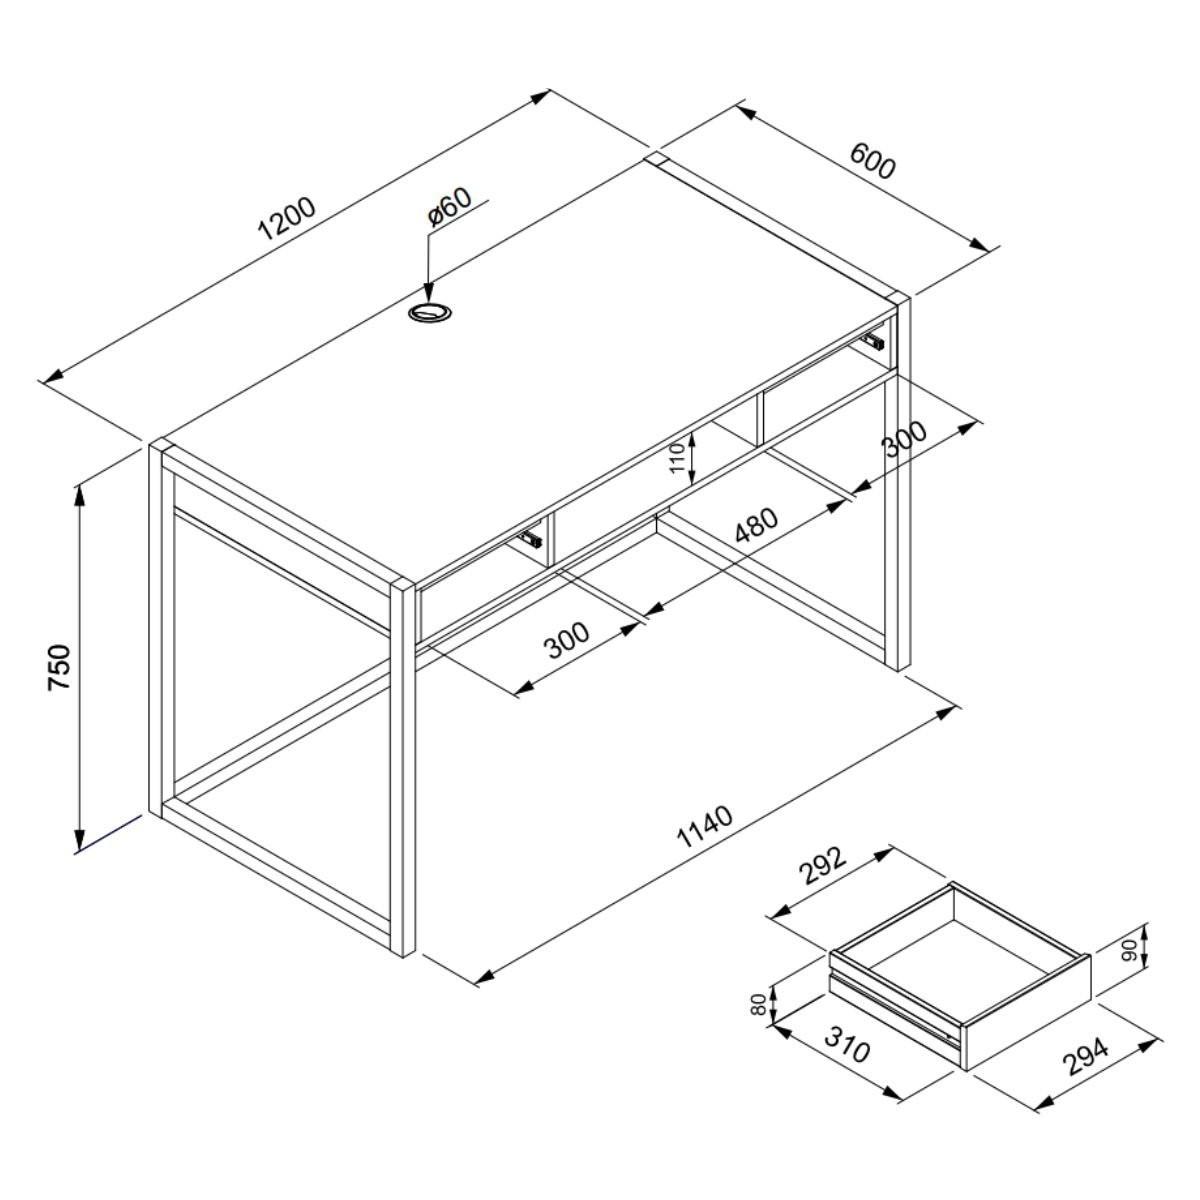 Calicosy Schreibtisch im Industrial Stil mit 2 Schubladen L120 cm - Denver  